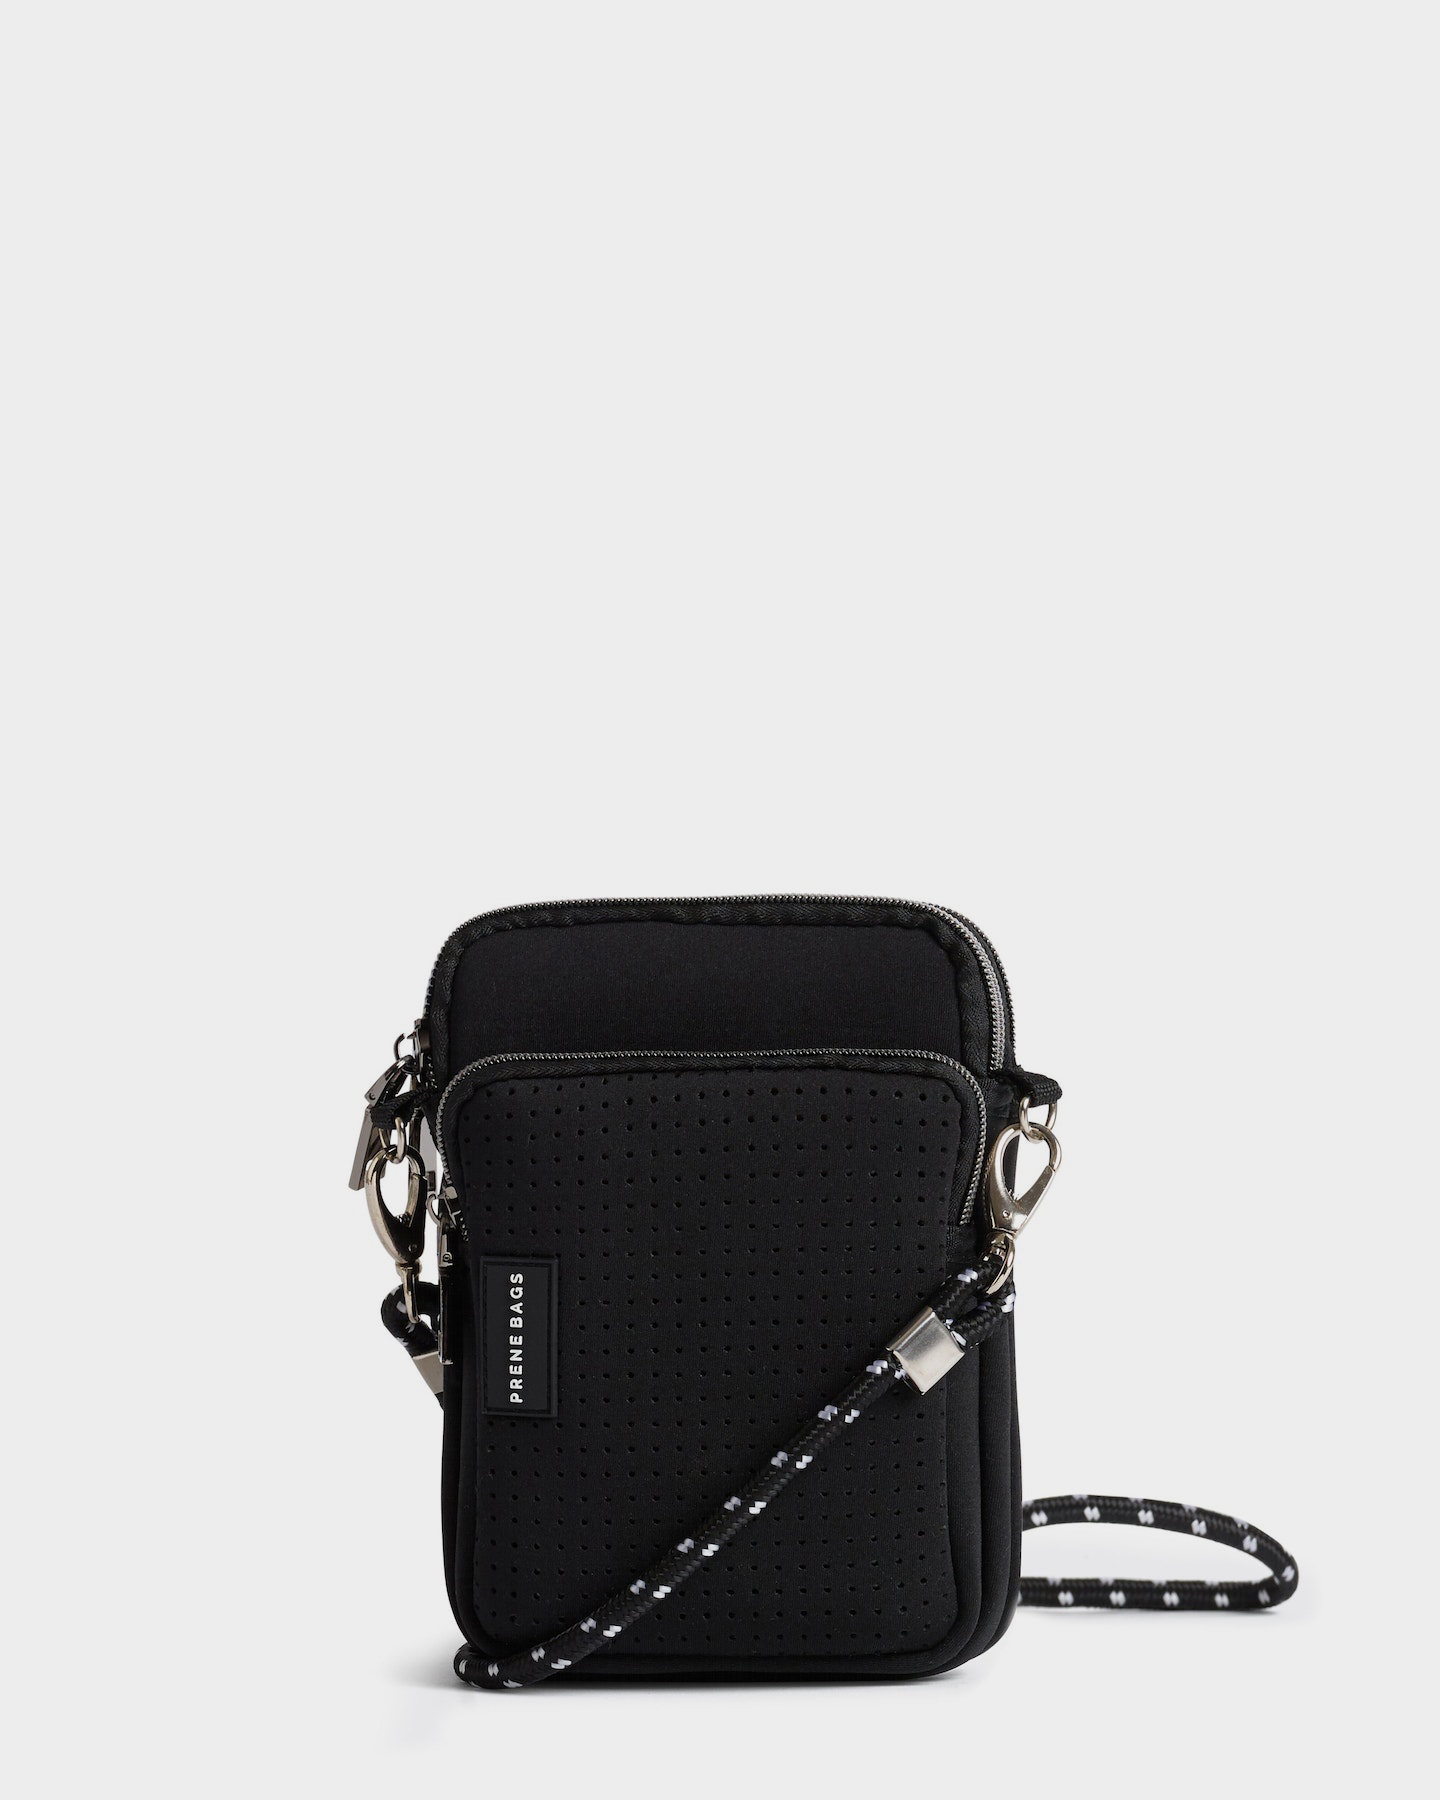 Prene Bags The Mimi Bag (Black) Neoprene Crossbody Bag - Black | SurfStitch